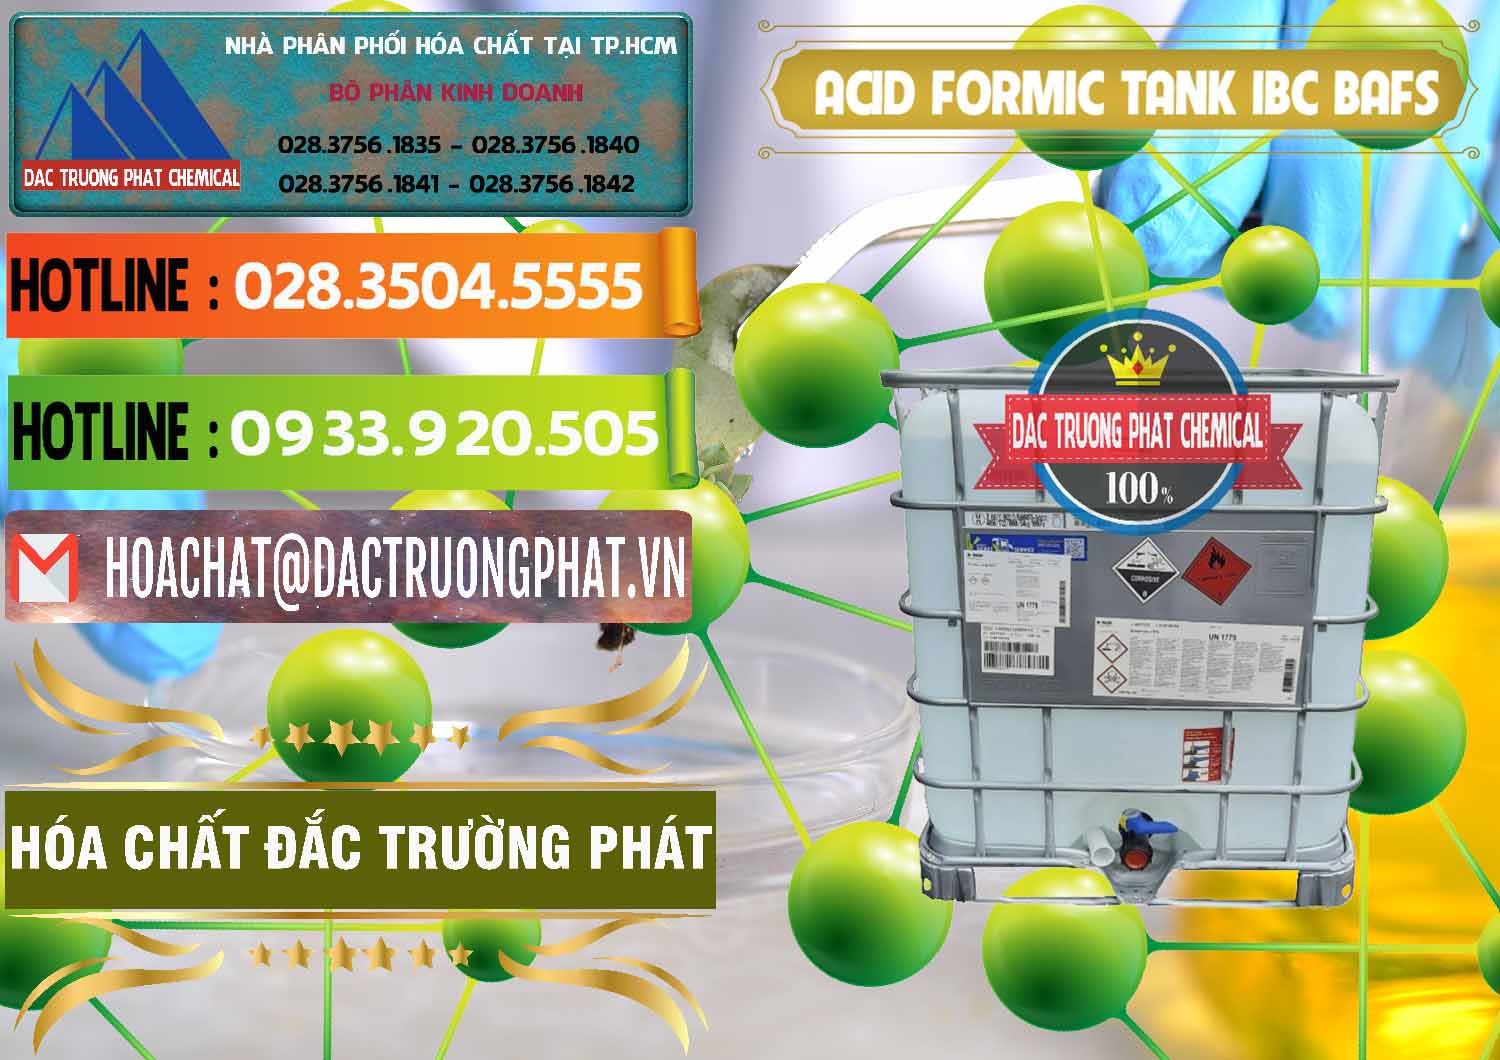 Nơi bán & phân phối Acid Formic - Axit Formic Tank - Bồn IBC BASF Đức - 0366 - Chuyên bán và cung cấp hóa chất tại TP.HCM - cungcaphoachat.com.vn